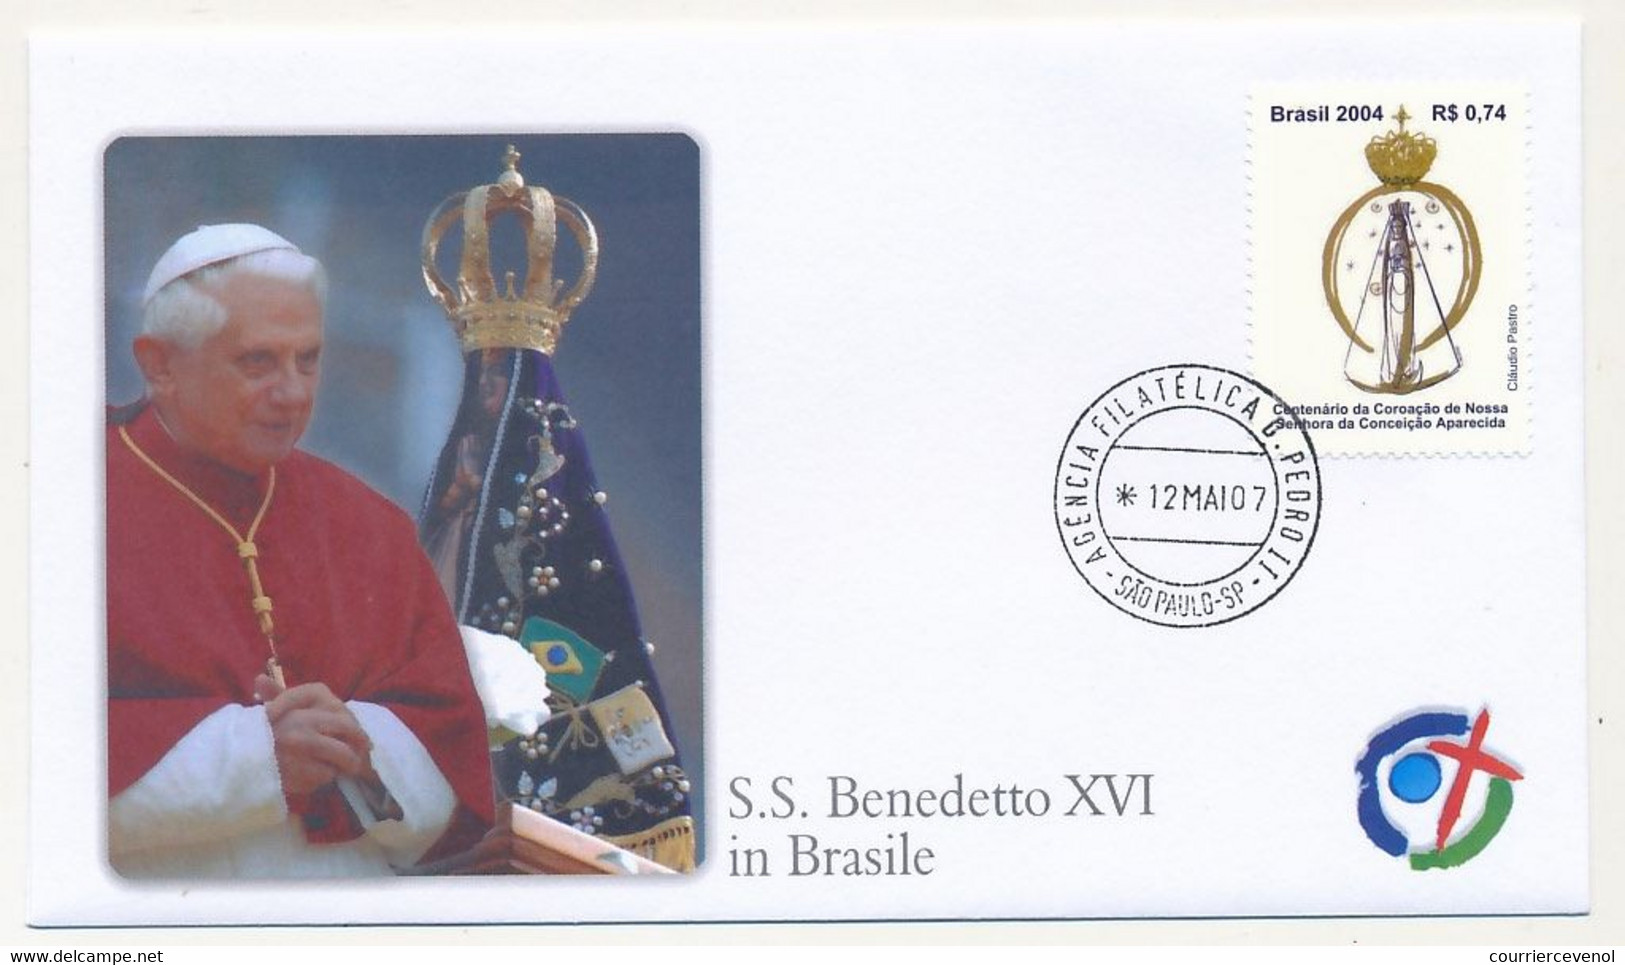 BRESIL - 7 enveloppes illustrées - Voyage du Pape Benoit XVI au Brésil - 2007